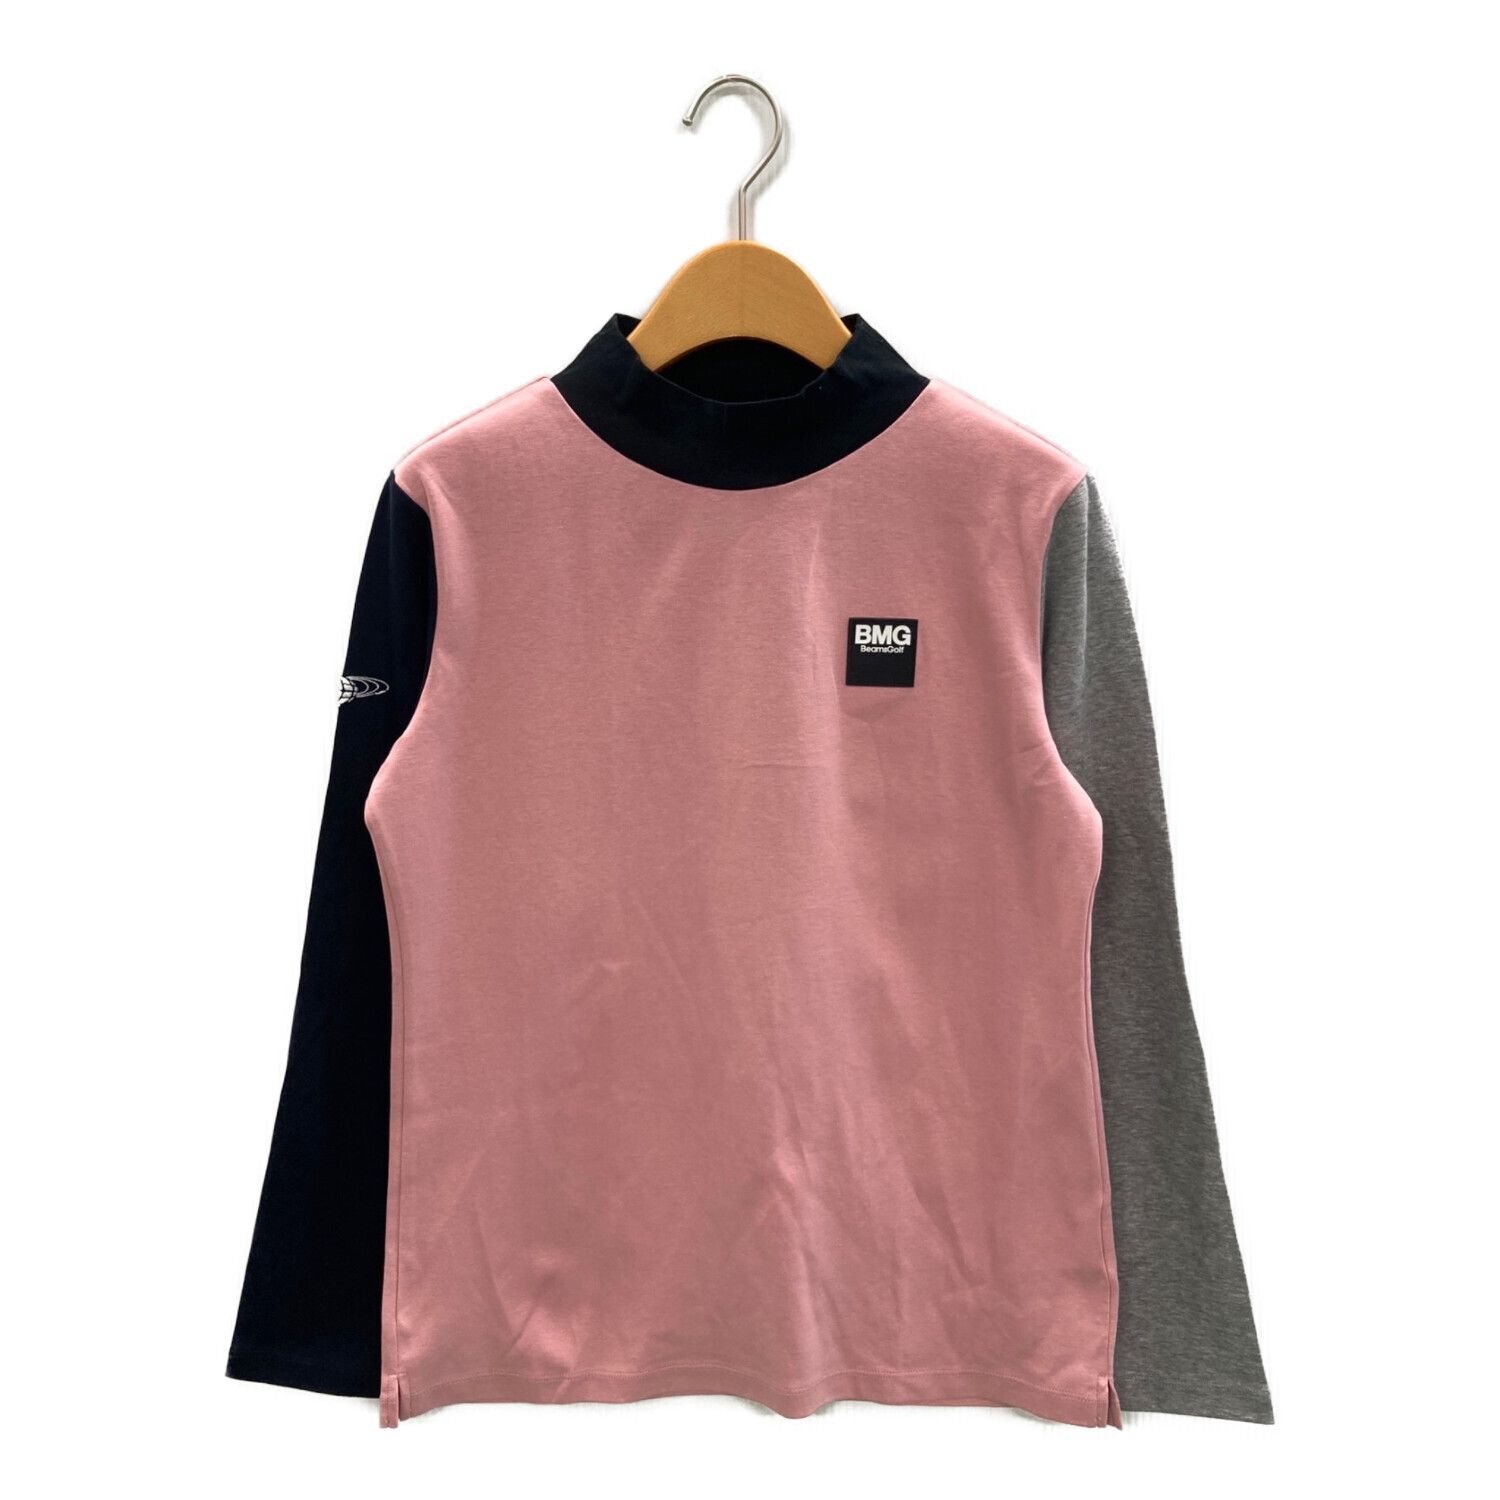 BEAMS GOLF (ビームスゴルフ) ゴルフウェア(トップス) レディース SIZE L ピンク クレイジーパターンモックネックシャツ